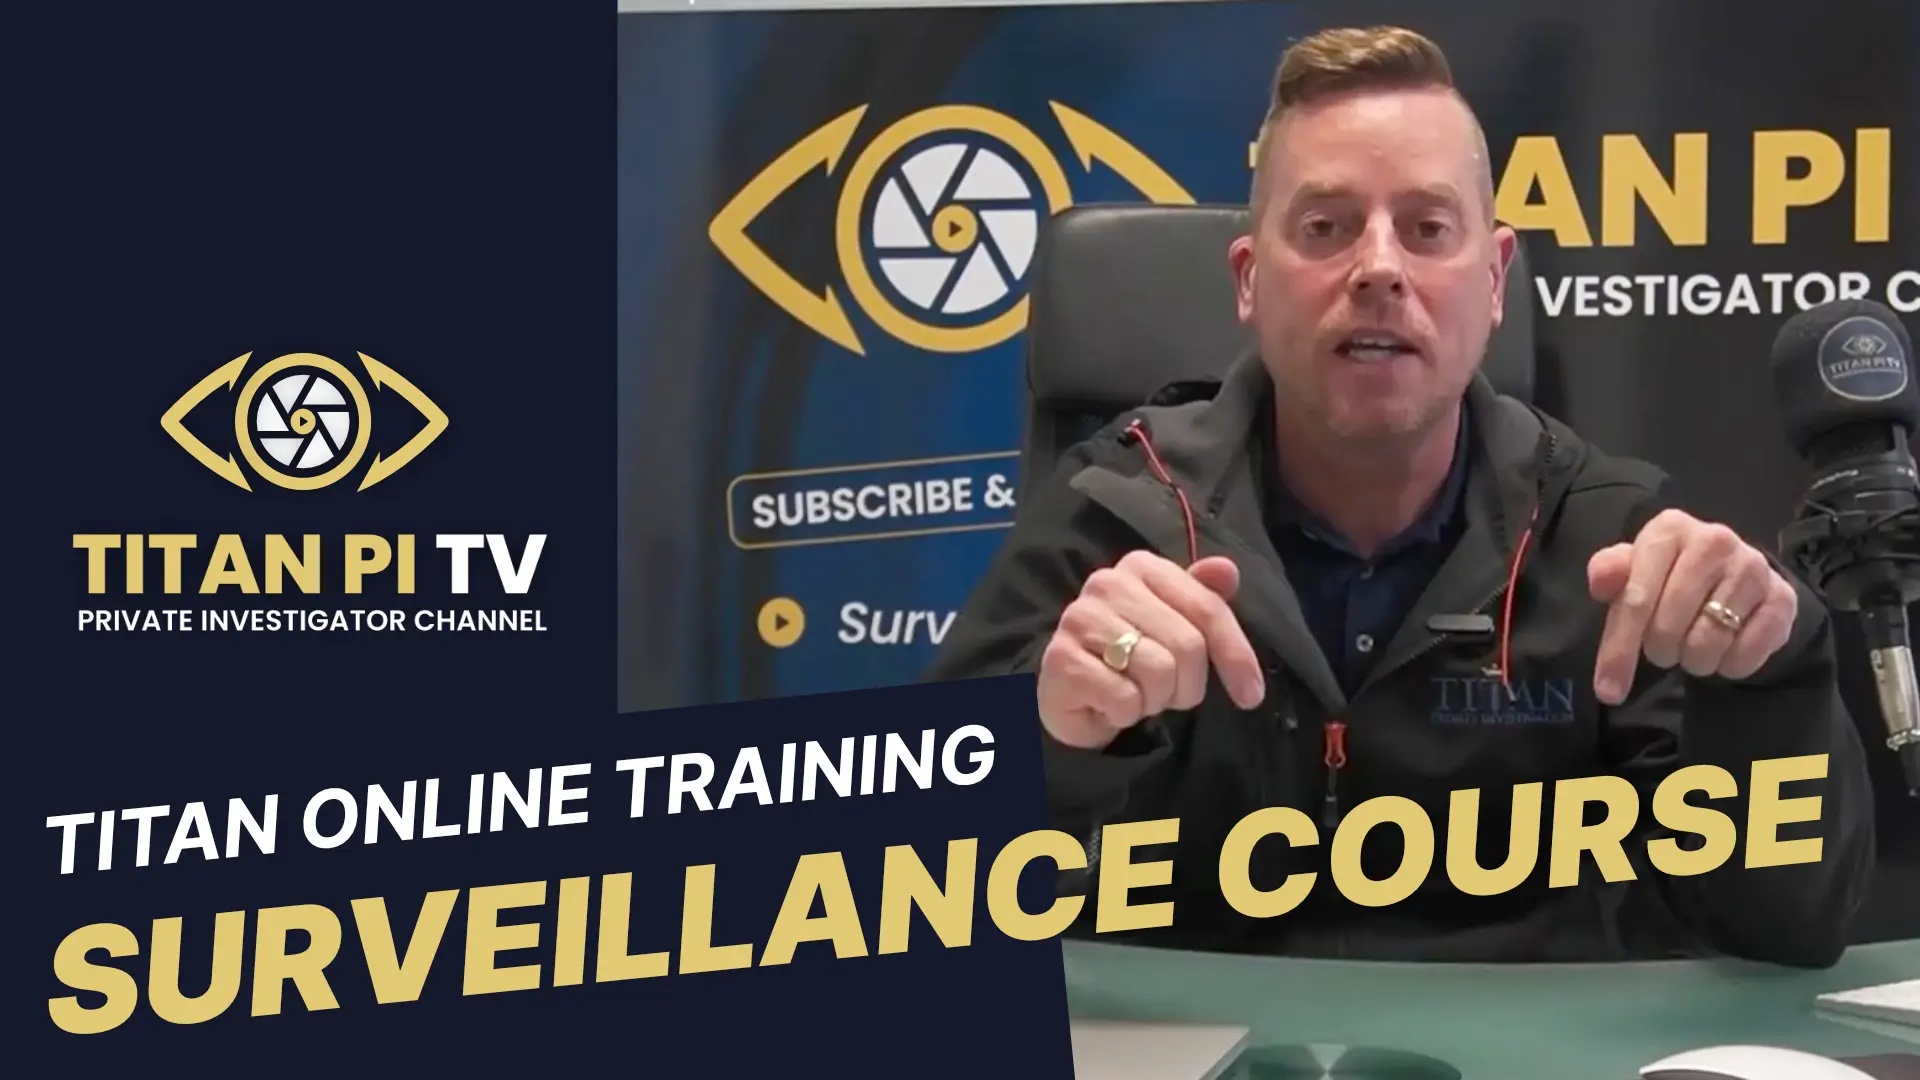 Online Surveillance Training Course | Titan PI TV